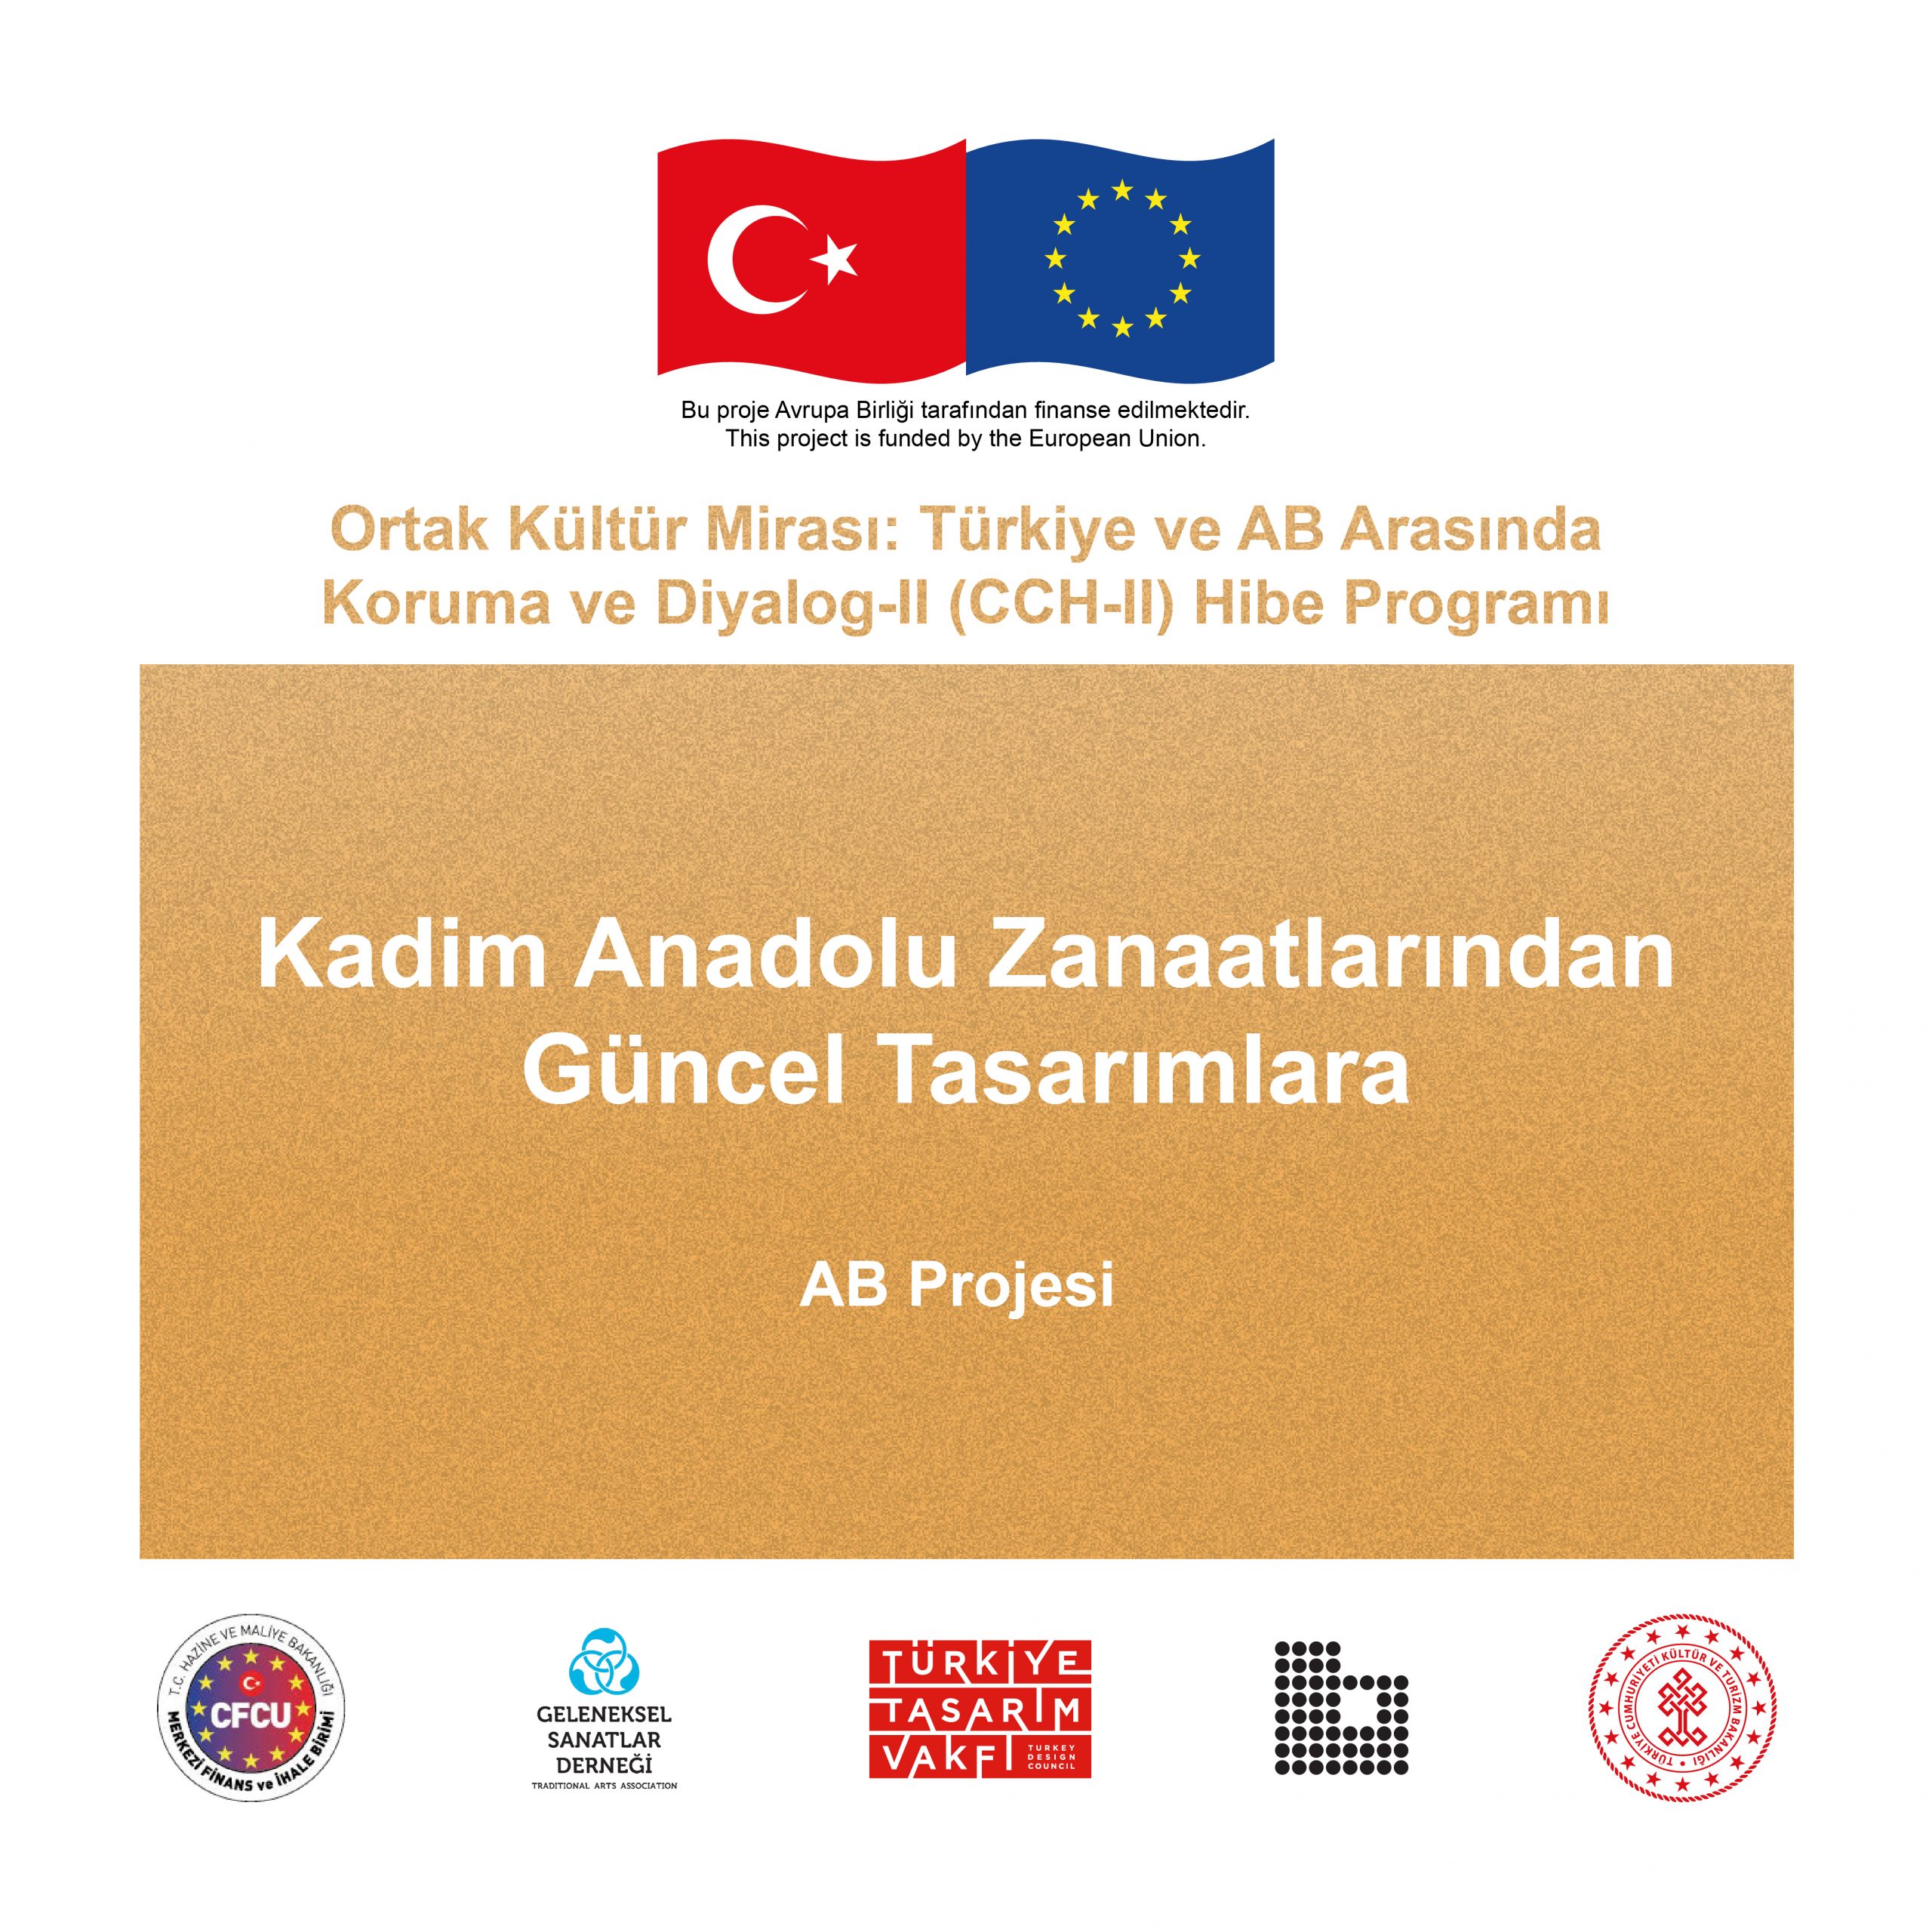 Kadim Anadolu Zanaatlarından Güncel Tasarımlara